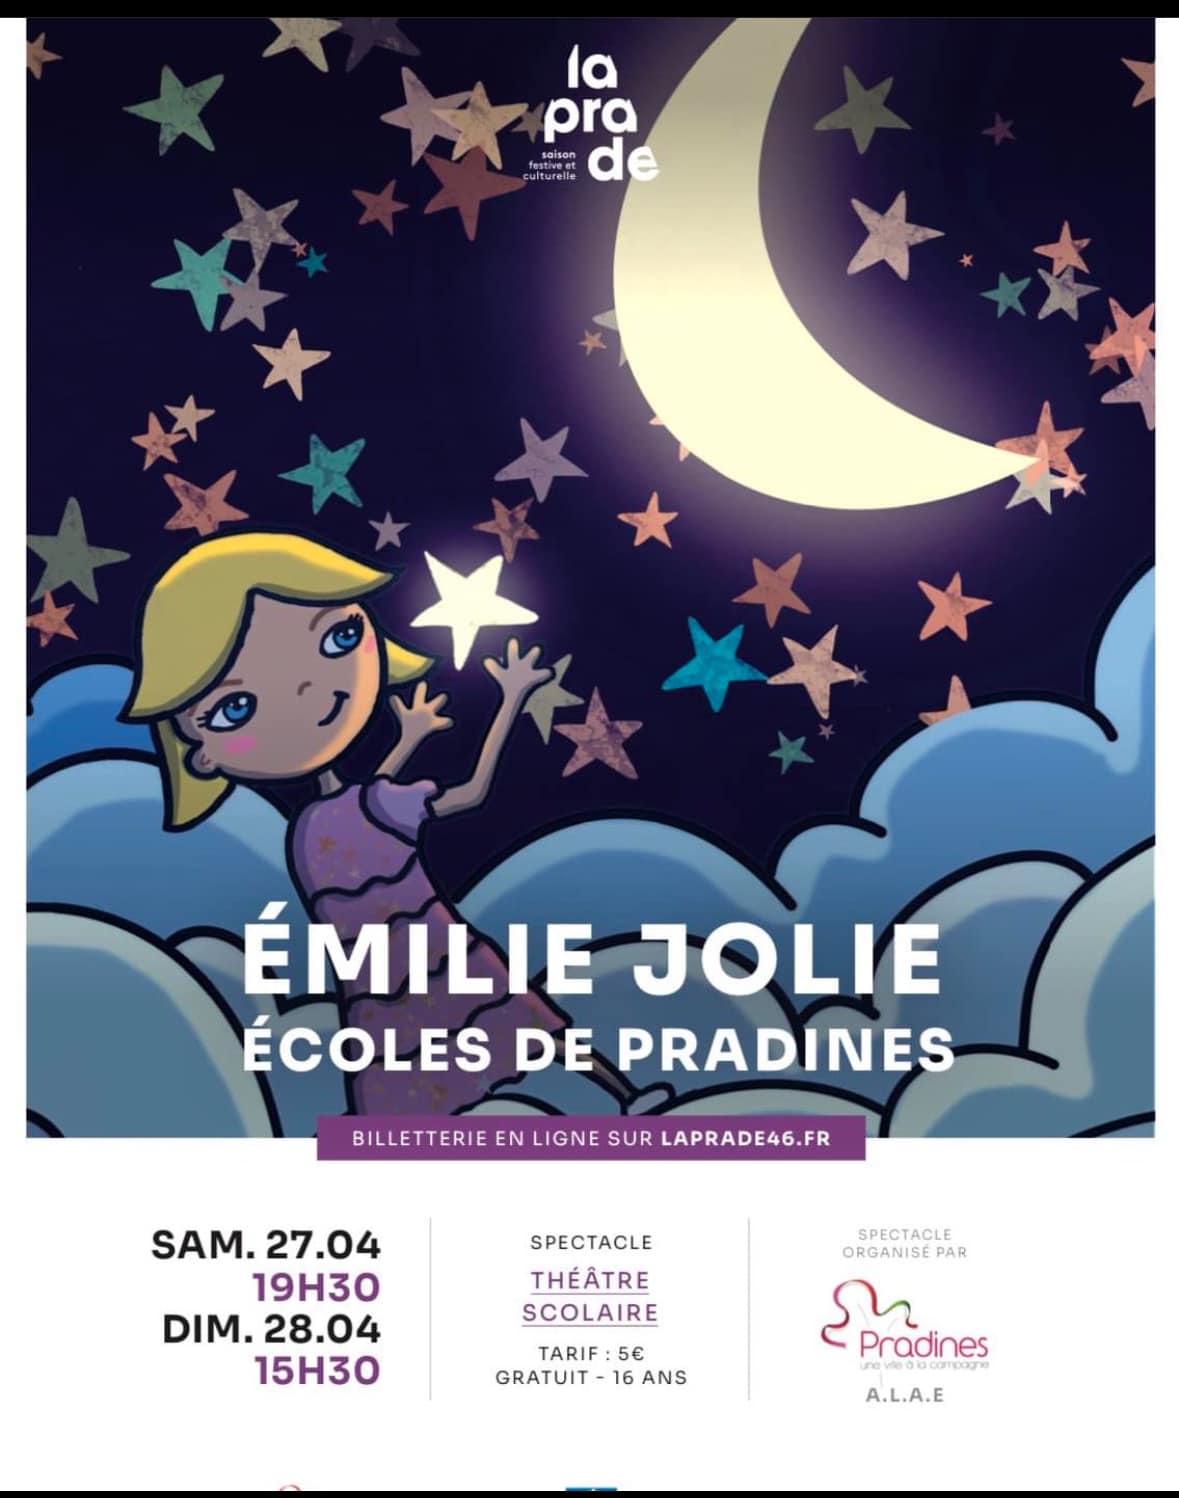 Théâtre scolaire: "Emilie Jolie"